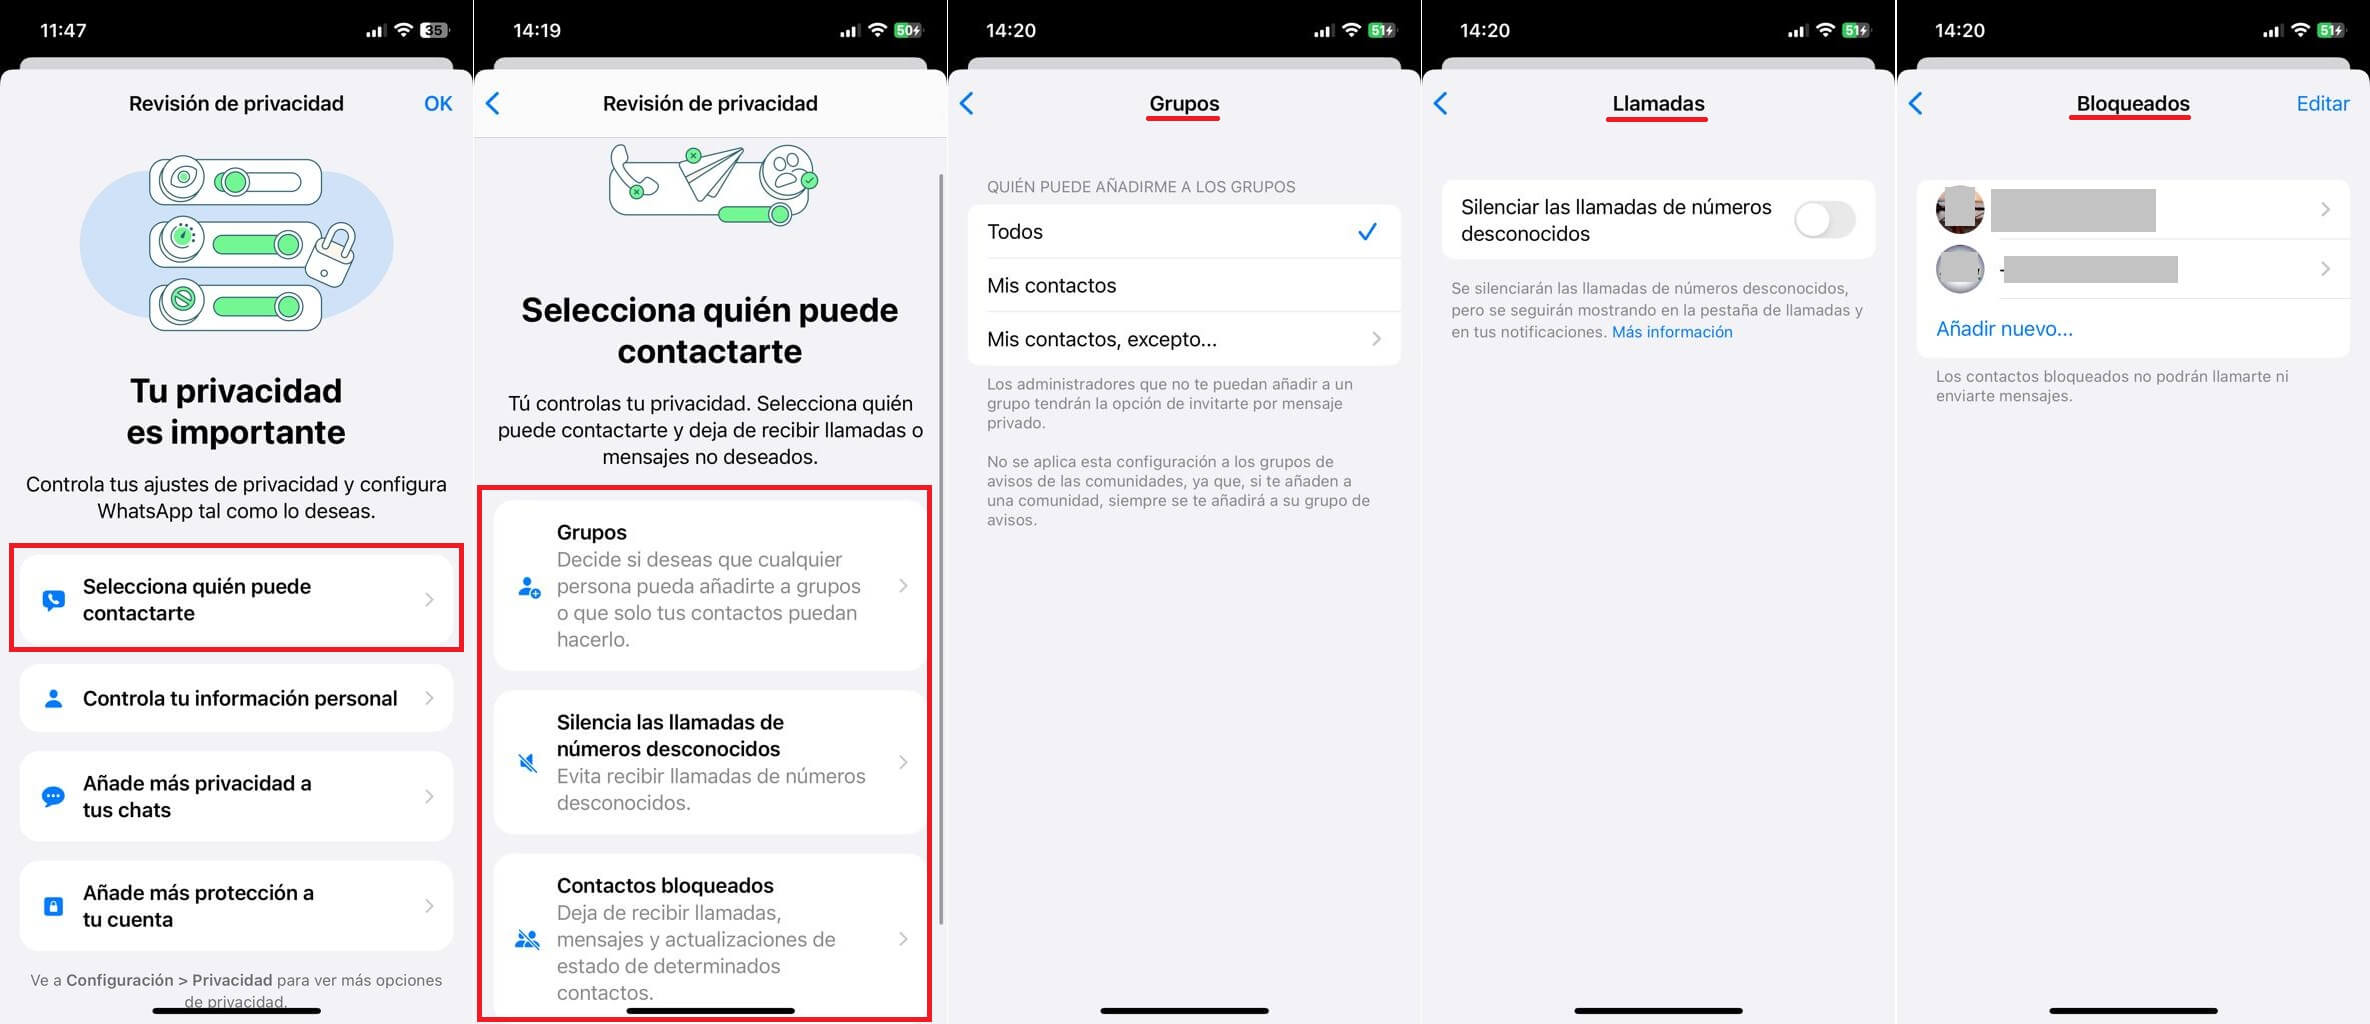 Revision de privacidad en Whastapp en Android o iPhone